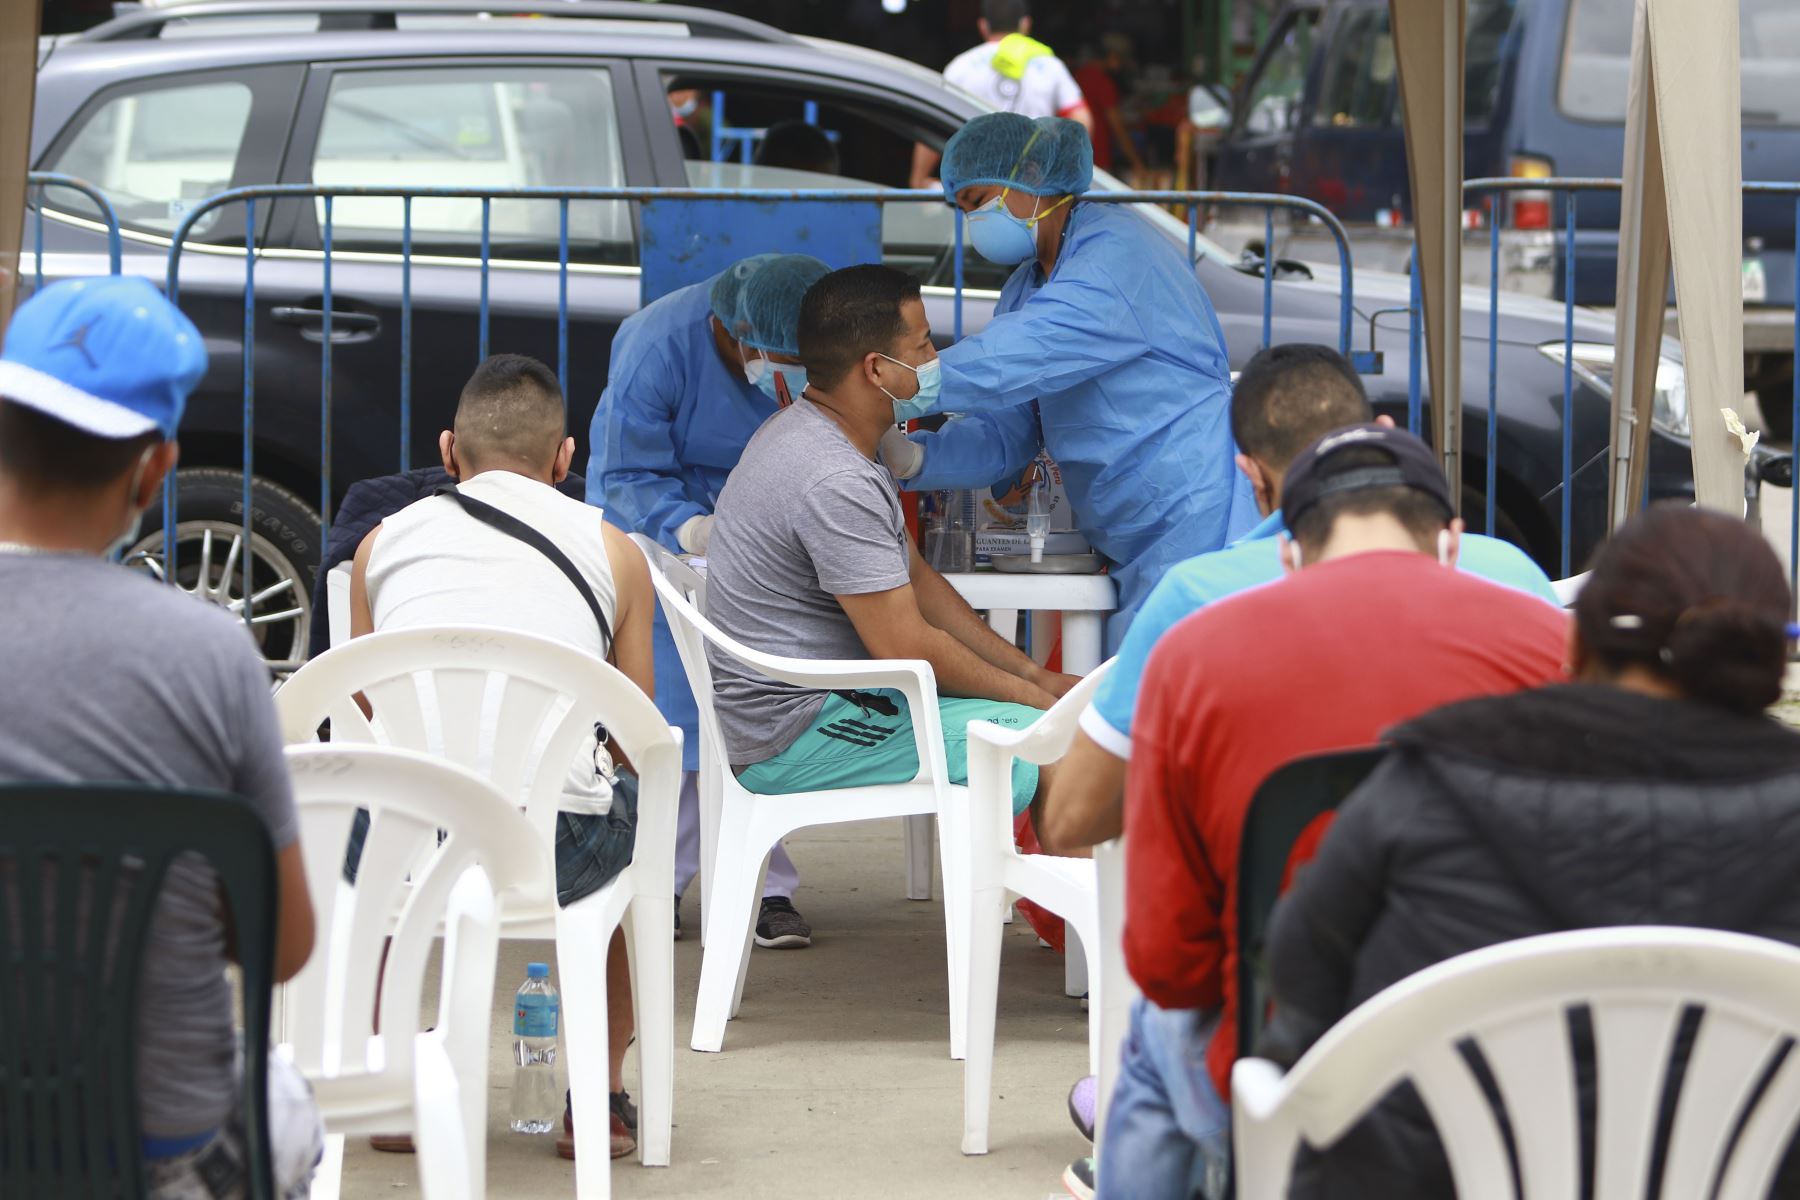 Brigadas de vacunación llegaron al Mercado Mayorista Unicachi en el distrito de Villa El Salvador para poder vacunar contra la Covid 19 a todos los comerciantes y transeúntes. Además se hizo descarte de Covid 19 y se entregó kits de mascarillas. Foto: ANDINA/Jhonel Rodríguez